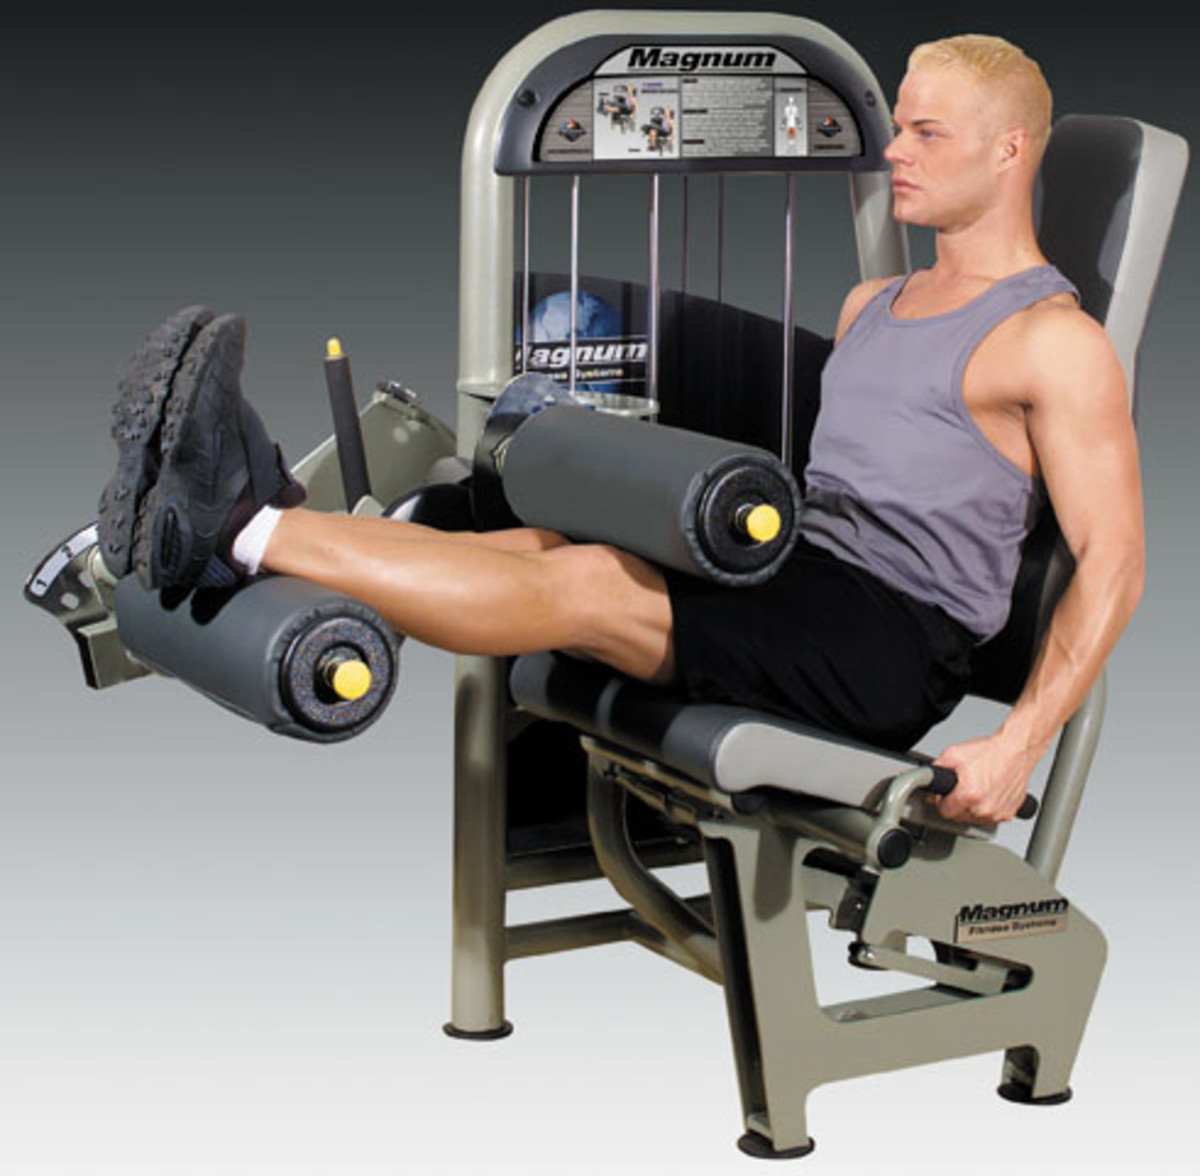 Leg Fitness Exercises on Equipment Roman Chair, Leg Curls